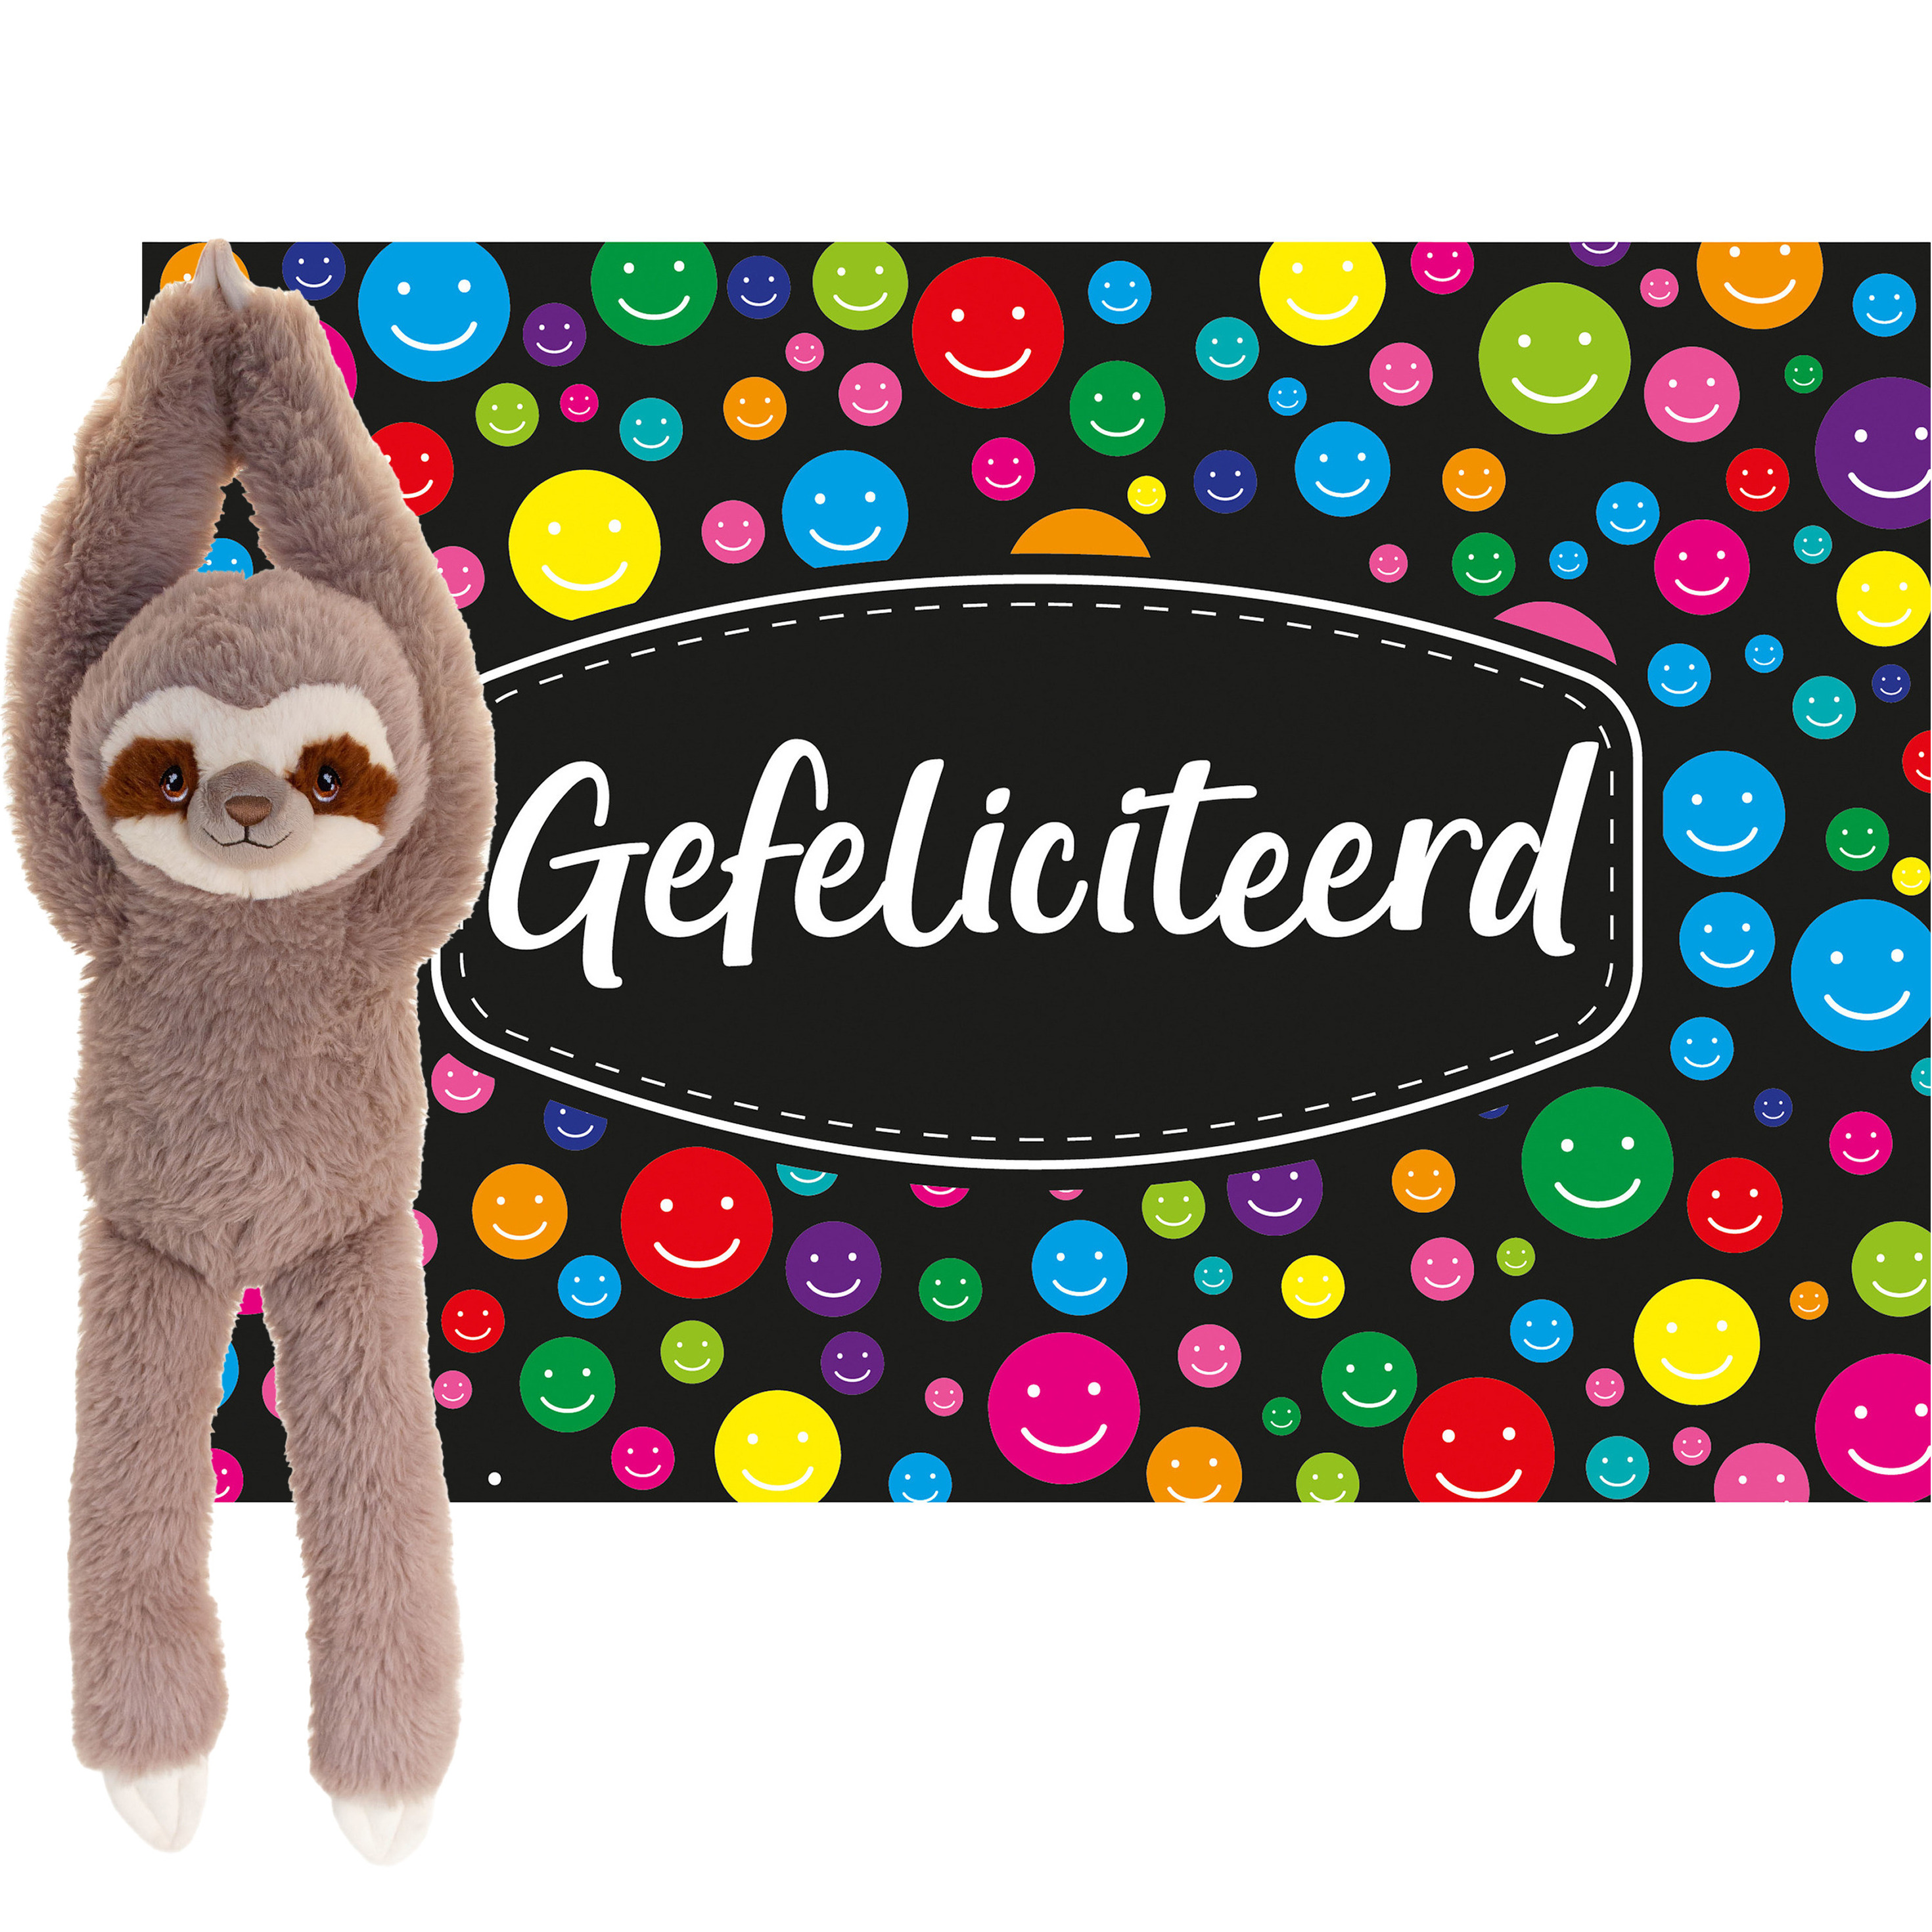 Keel toys Cadeaukaart Gefeliciteerd met knuffeldier luiaard 50 cm